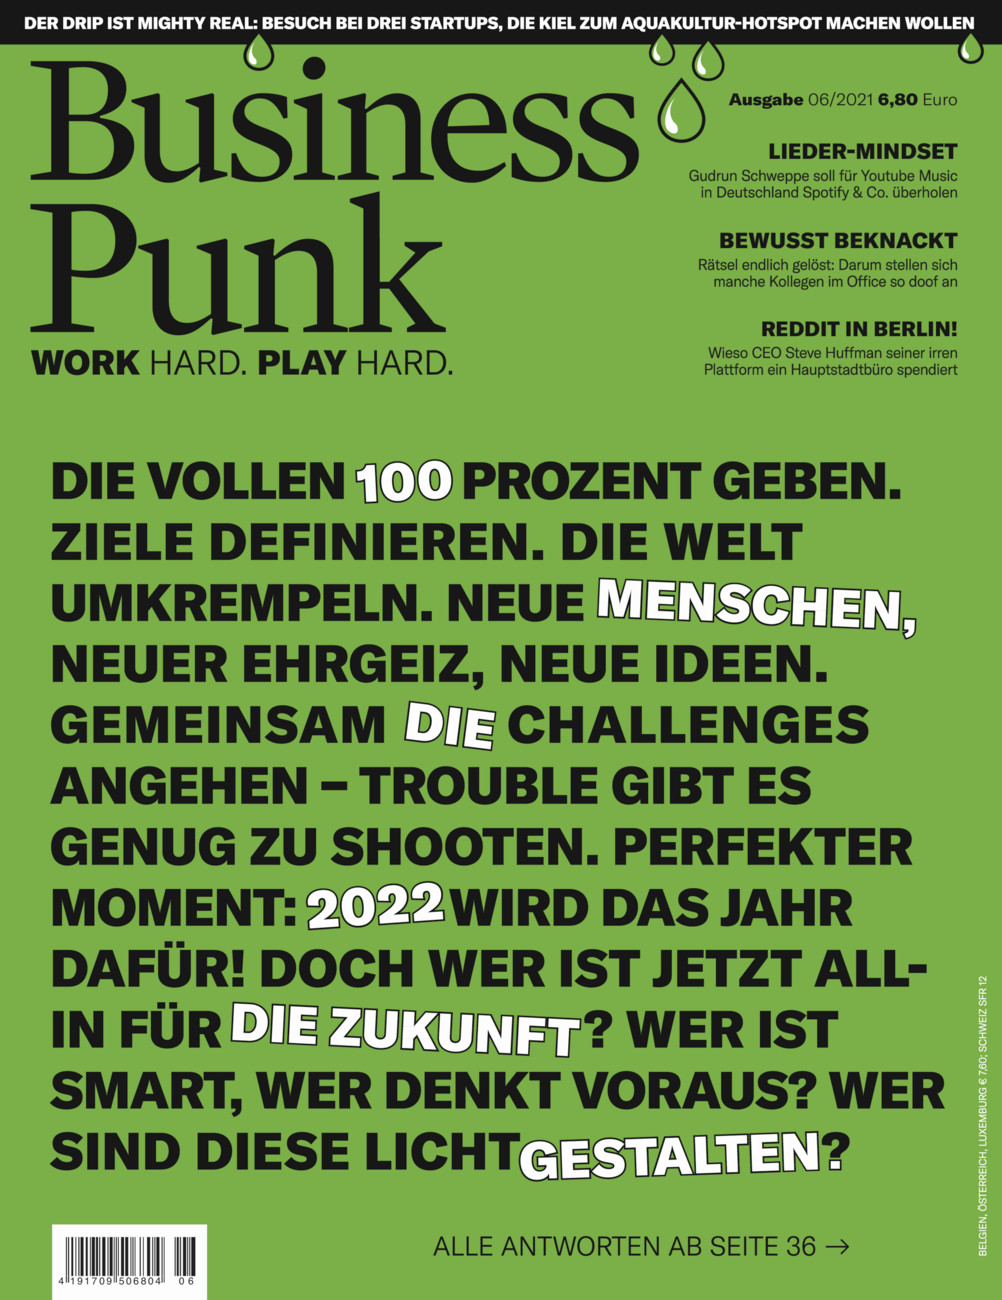 Business Punk Magazin vom Samstag, 15.01.2022